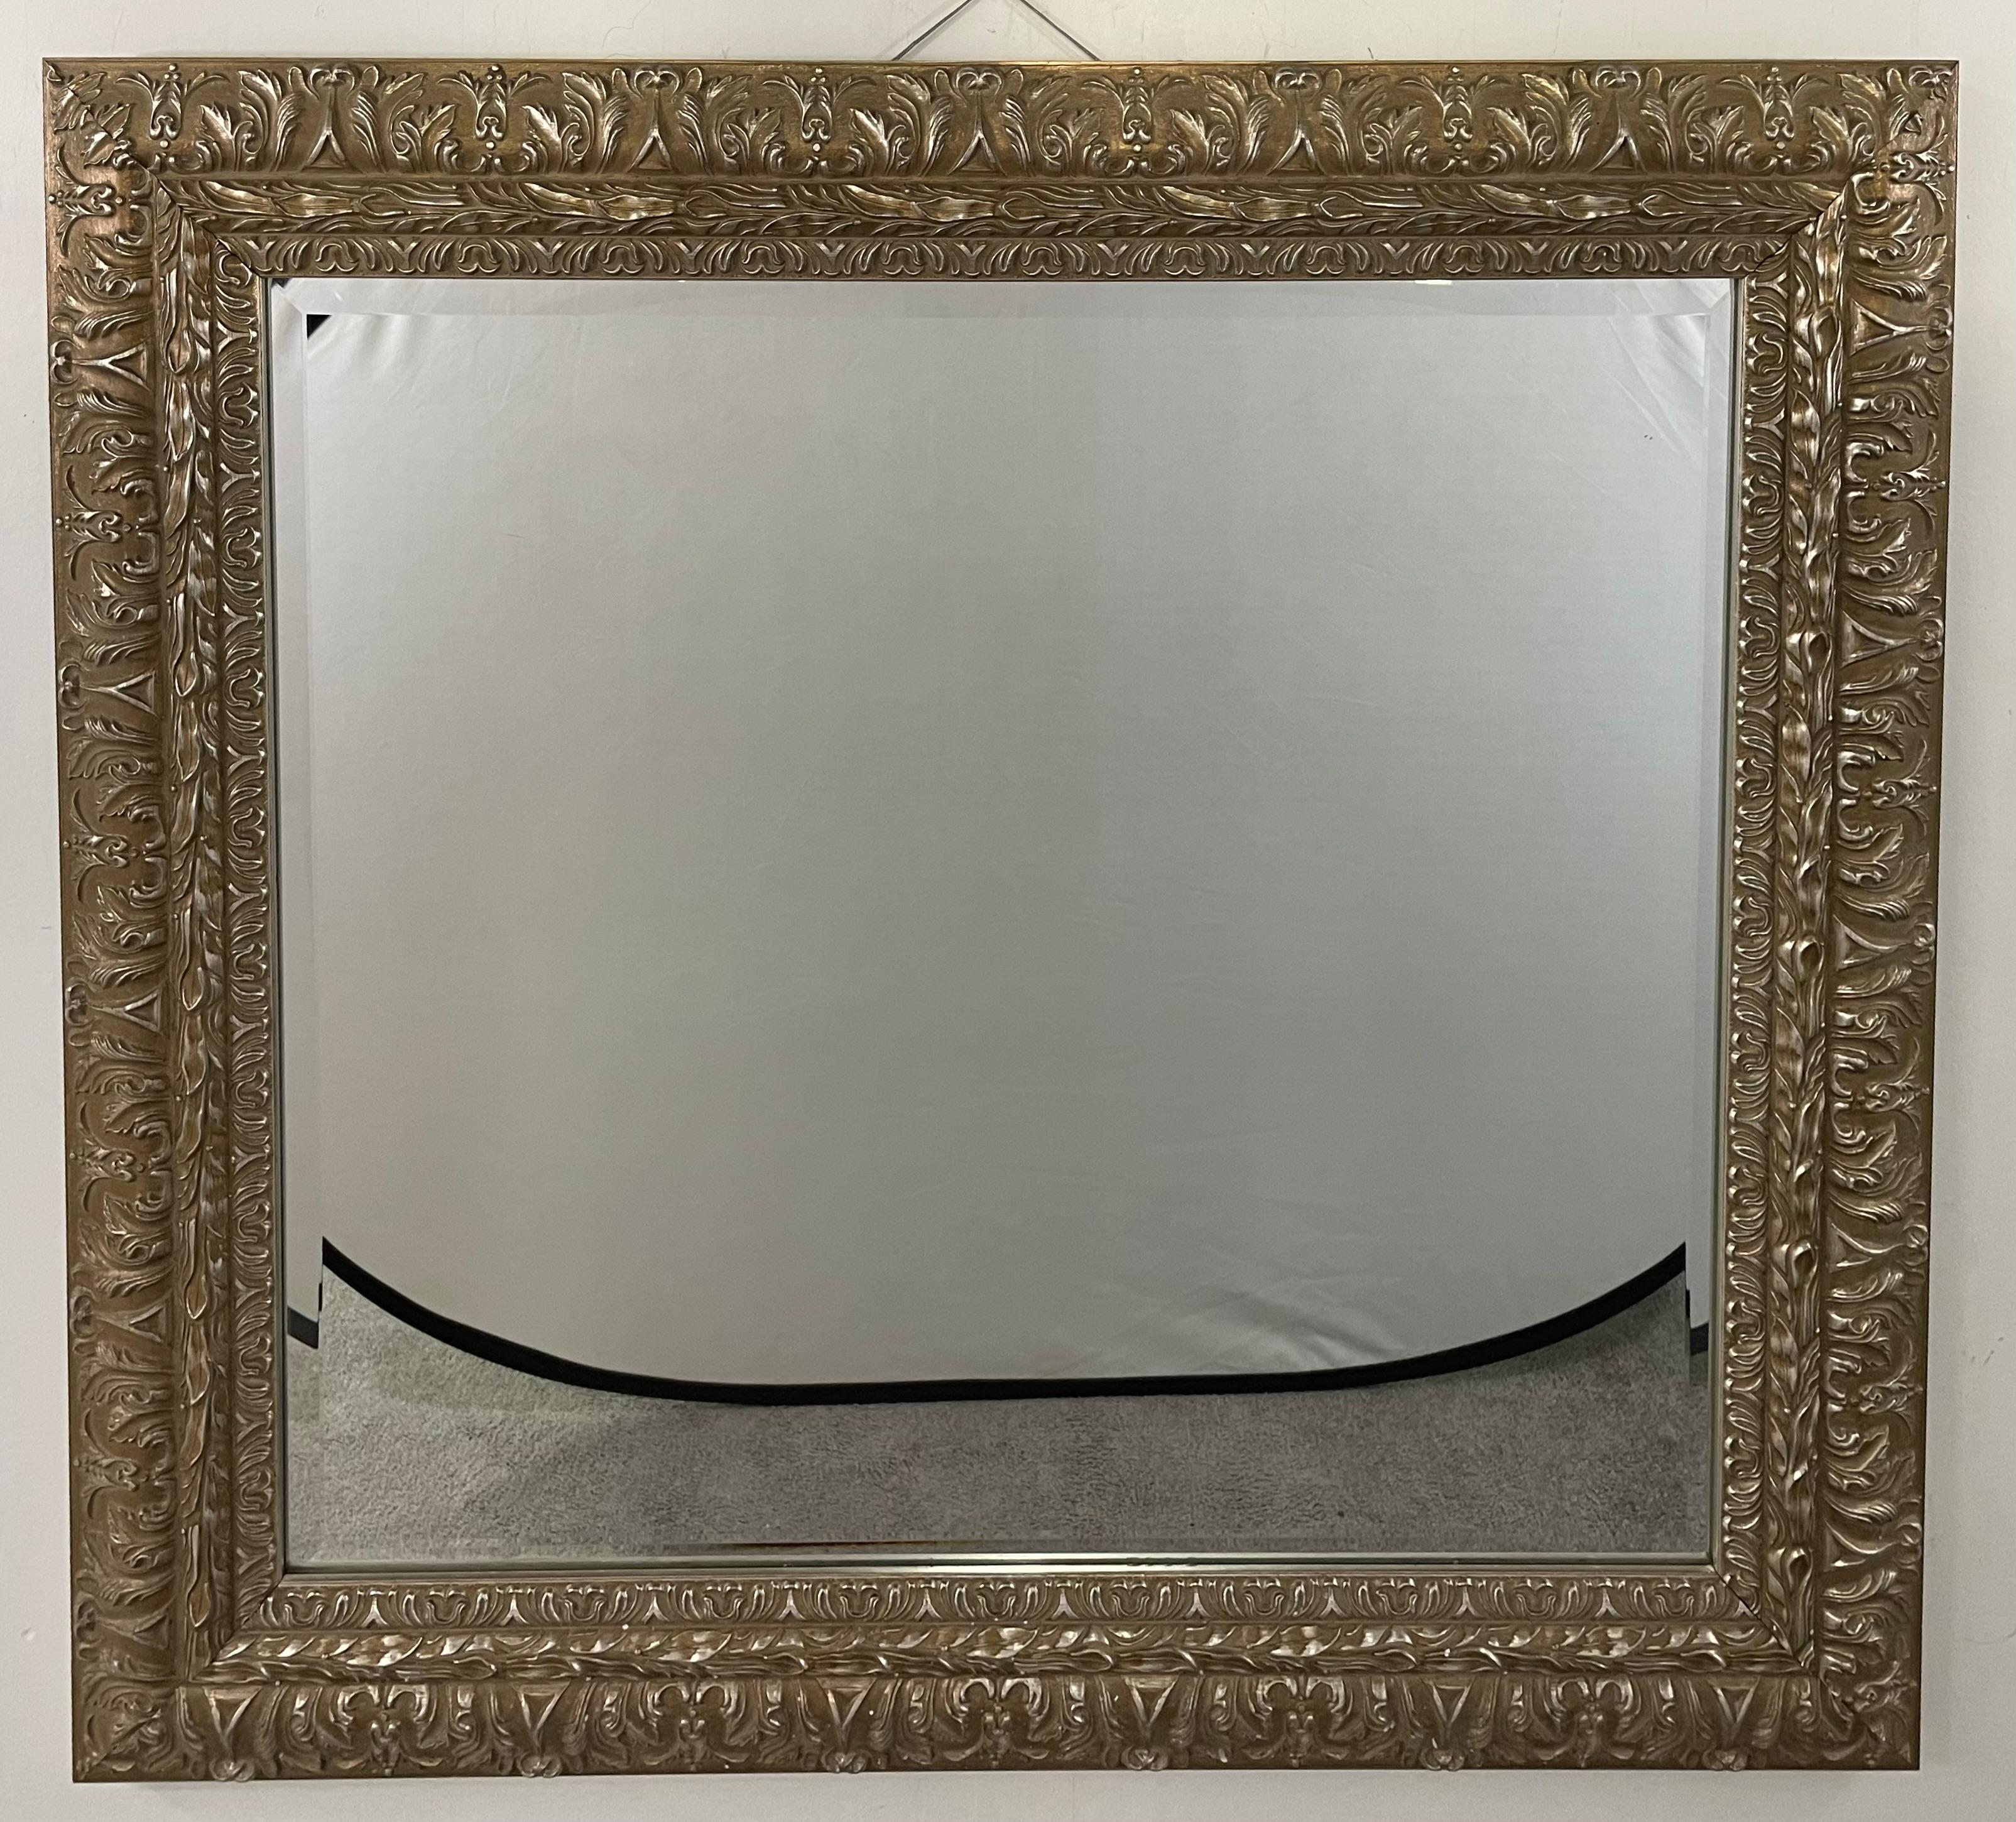 Ein eleganter rechteckiger Spiegel im französischen Regency-Stil. Die Wand oder Mantel Spiegel verfügt über detaillierte Hand schnitzen präsentiert Akanthus und Blätter Motive alle über den Rahmen alle in einem Silber / Champagner Farbe gemacht. Der